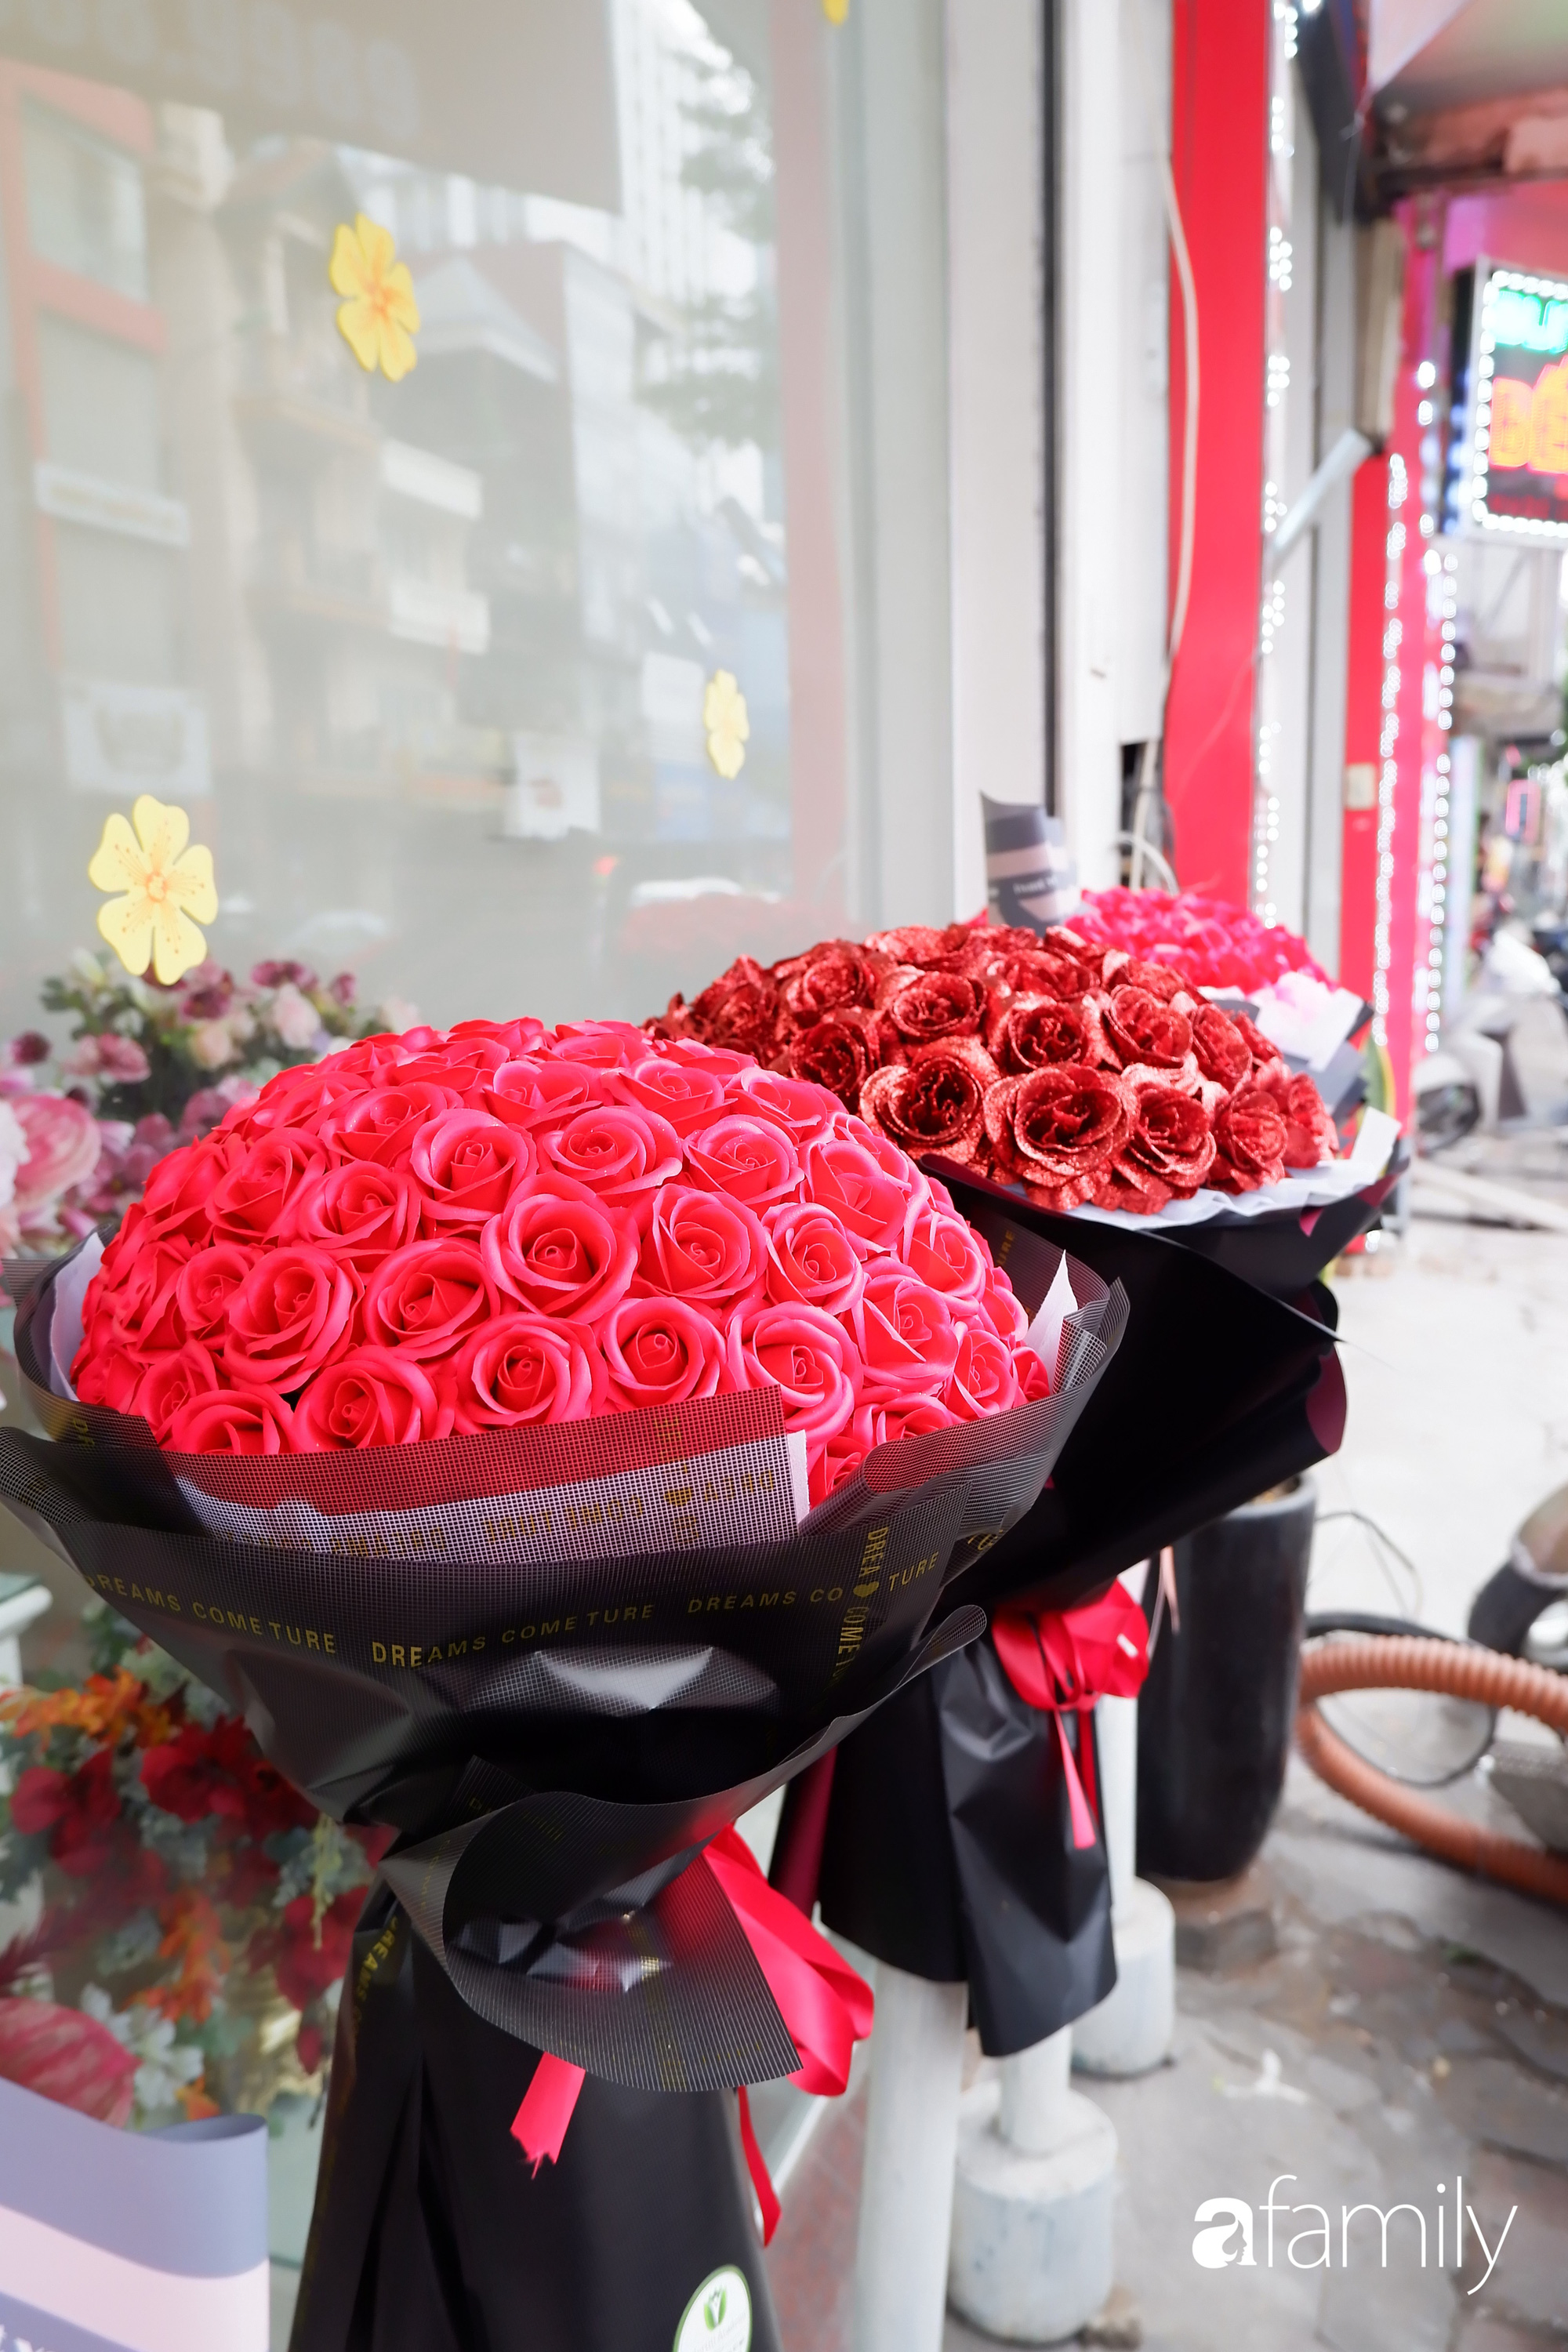 Thị trường hoa sôi động trở lại, những bó hoa siêu to khổng lồ hút khách dịp 8/3 - Ảnh 4.